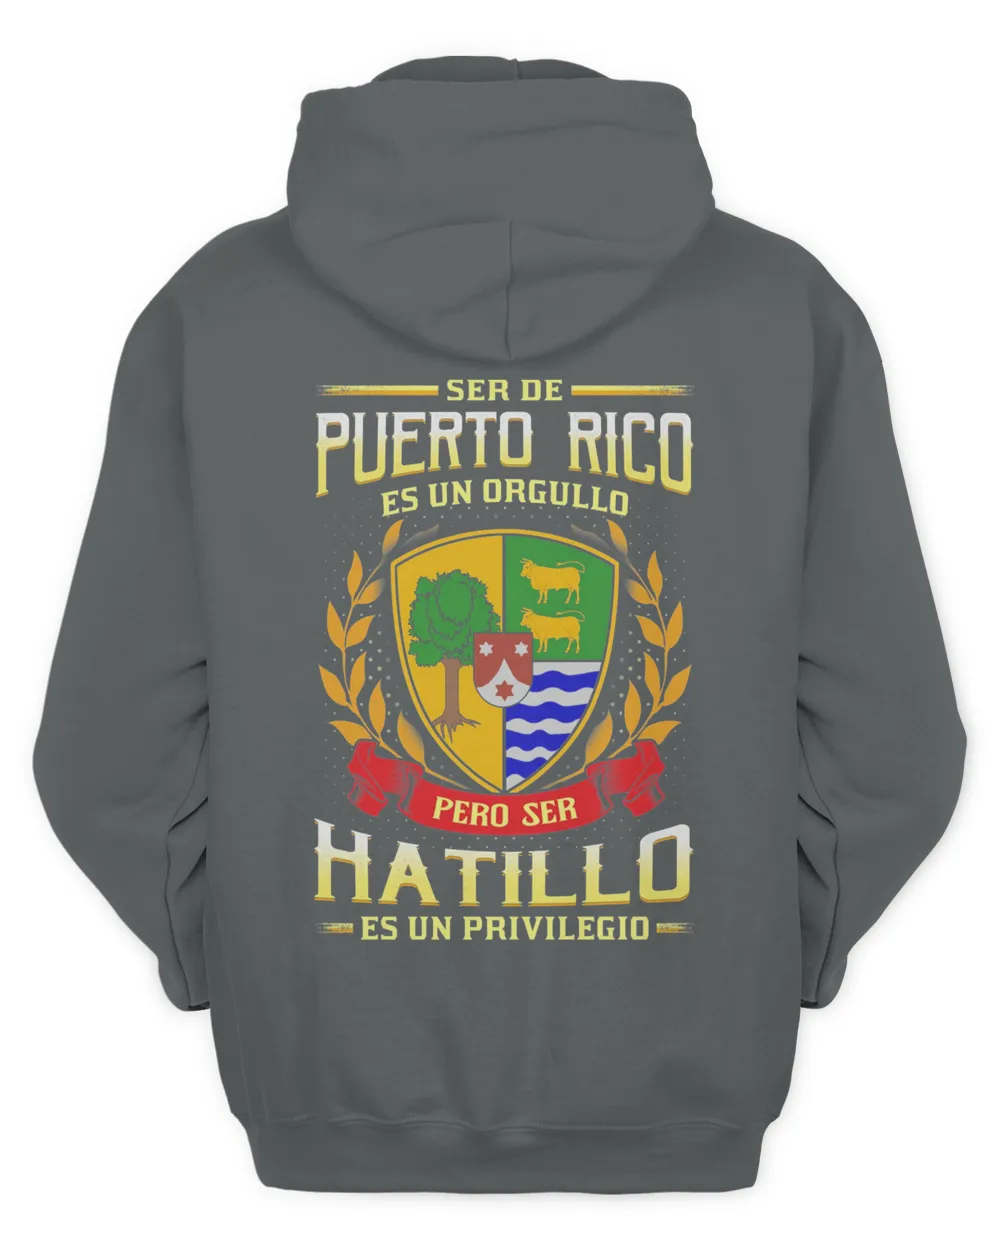 Ser De Puerto Rico Es Un Orgullo Pero Ser Hatillo Es Un Privilegio Shirt